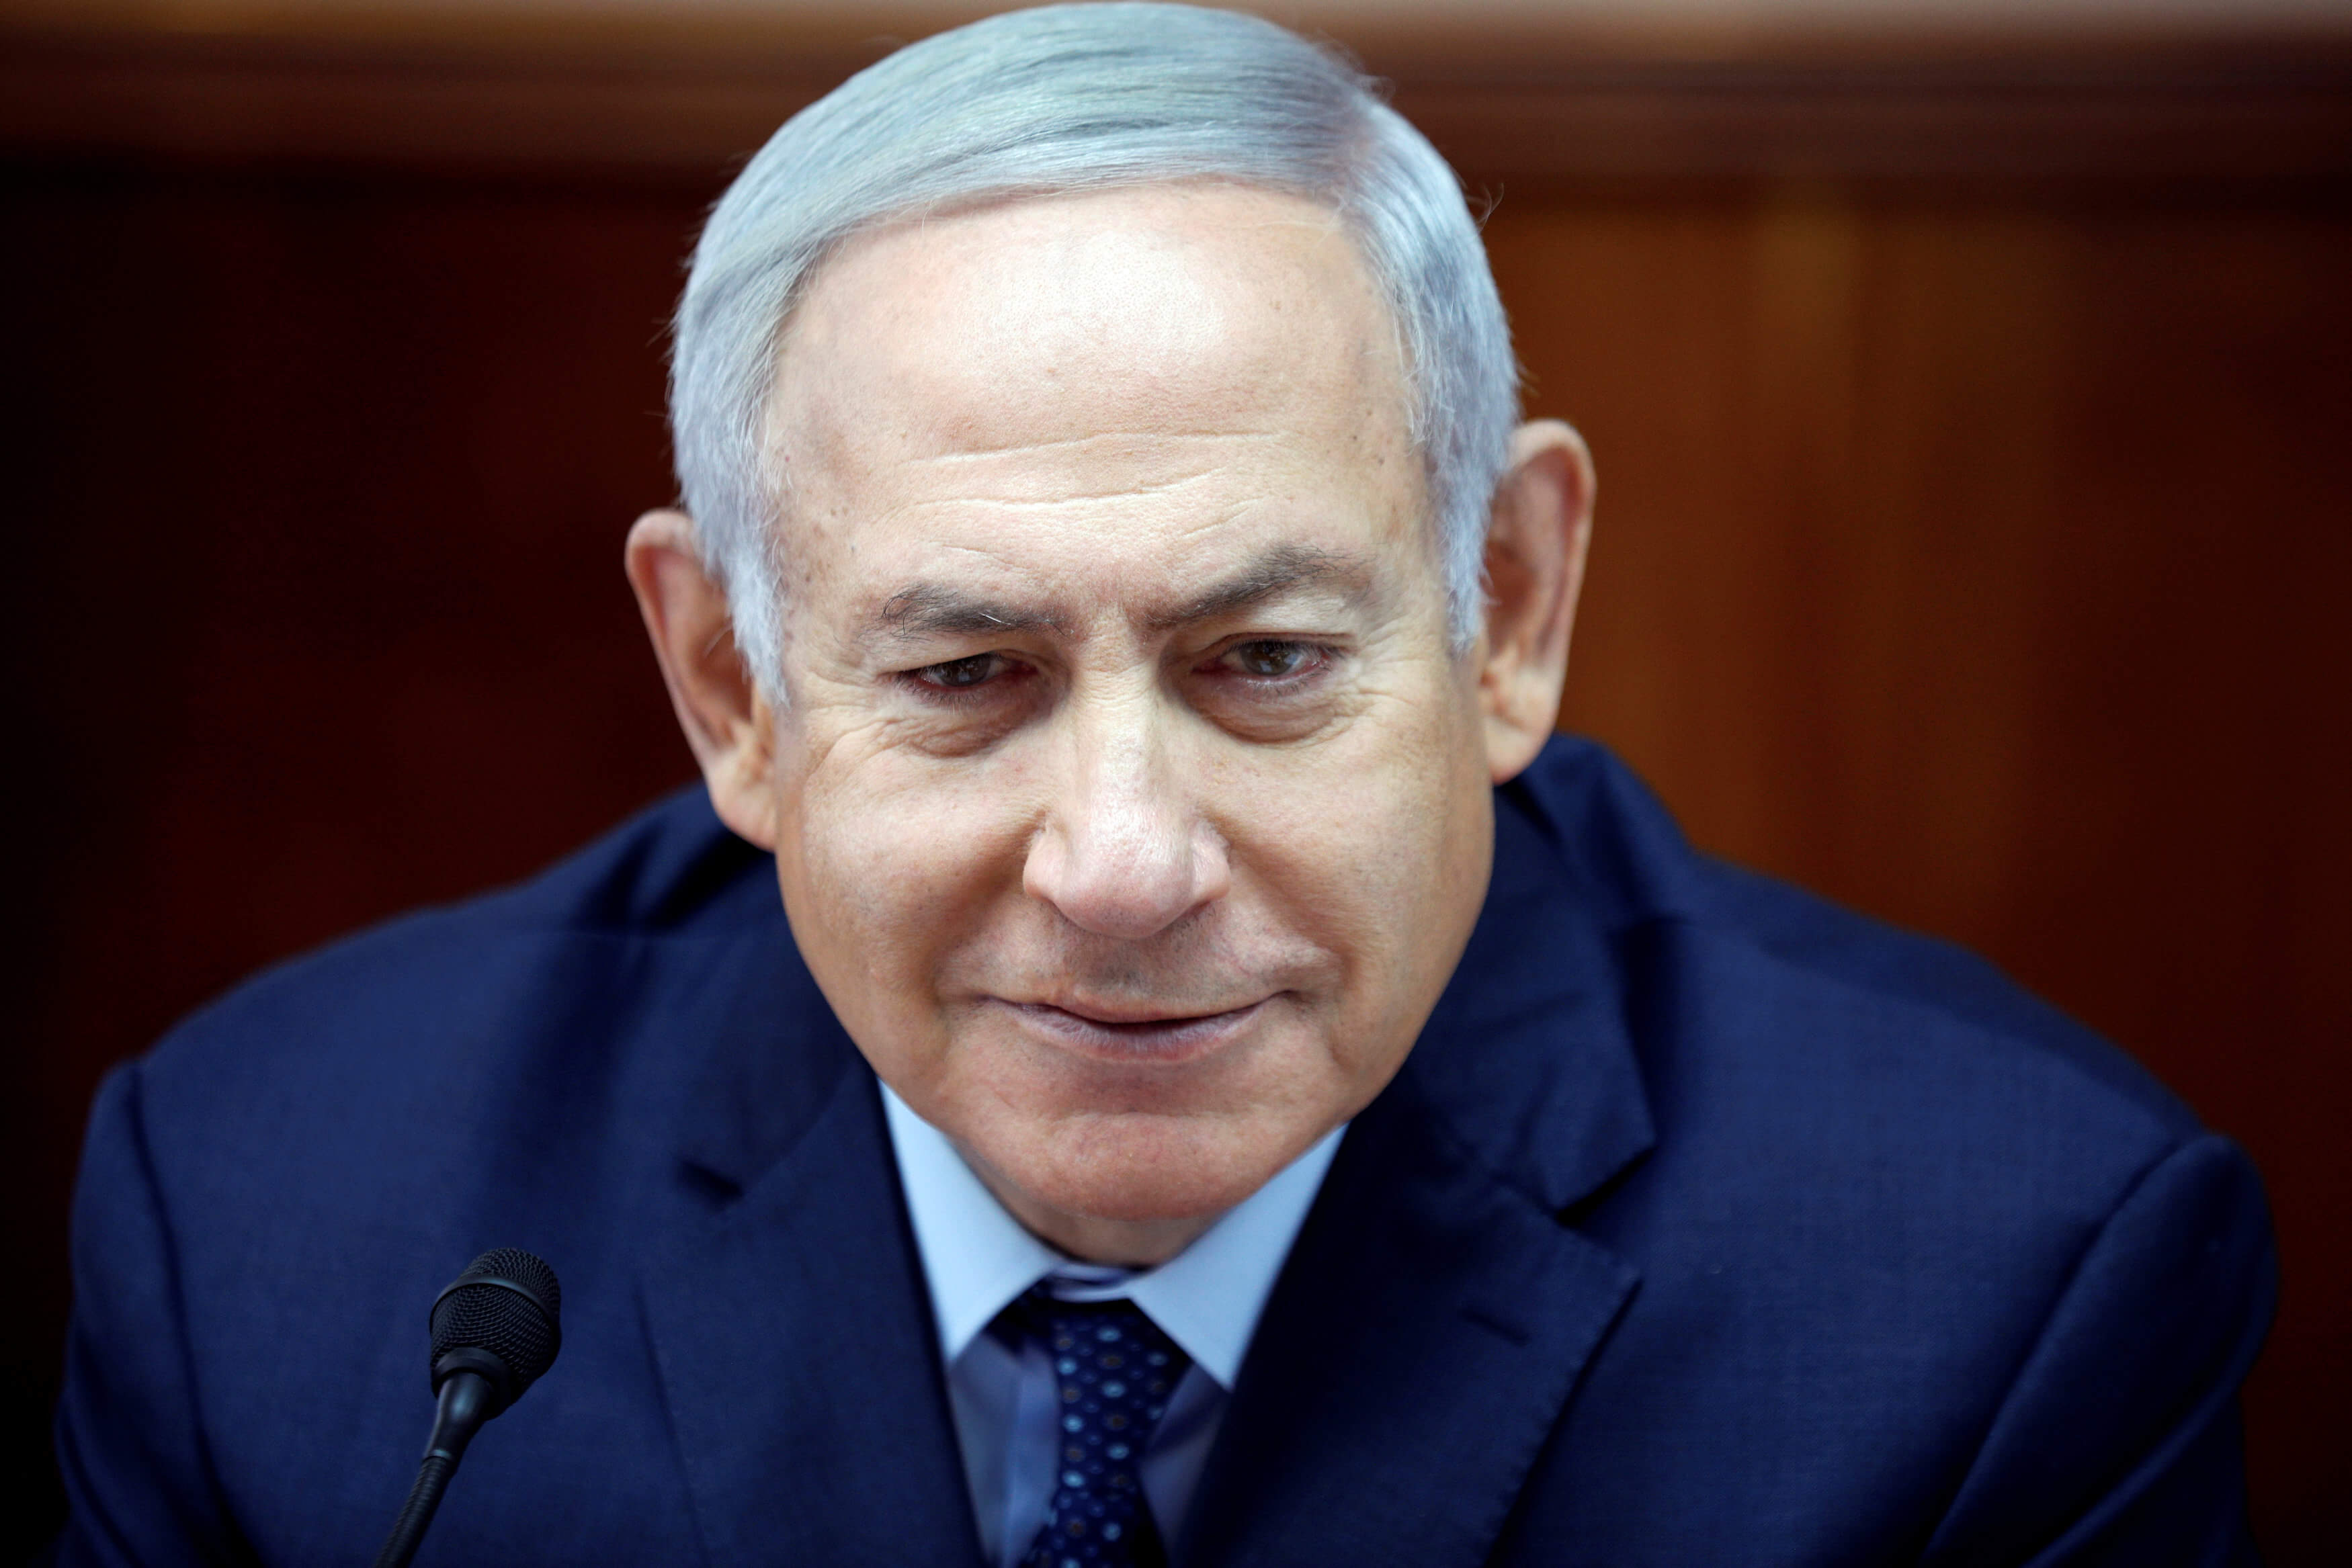 Histórica, cambiar embajada brasileña a Jerusalén: Netanyahu